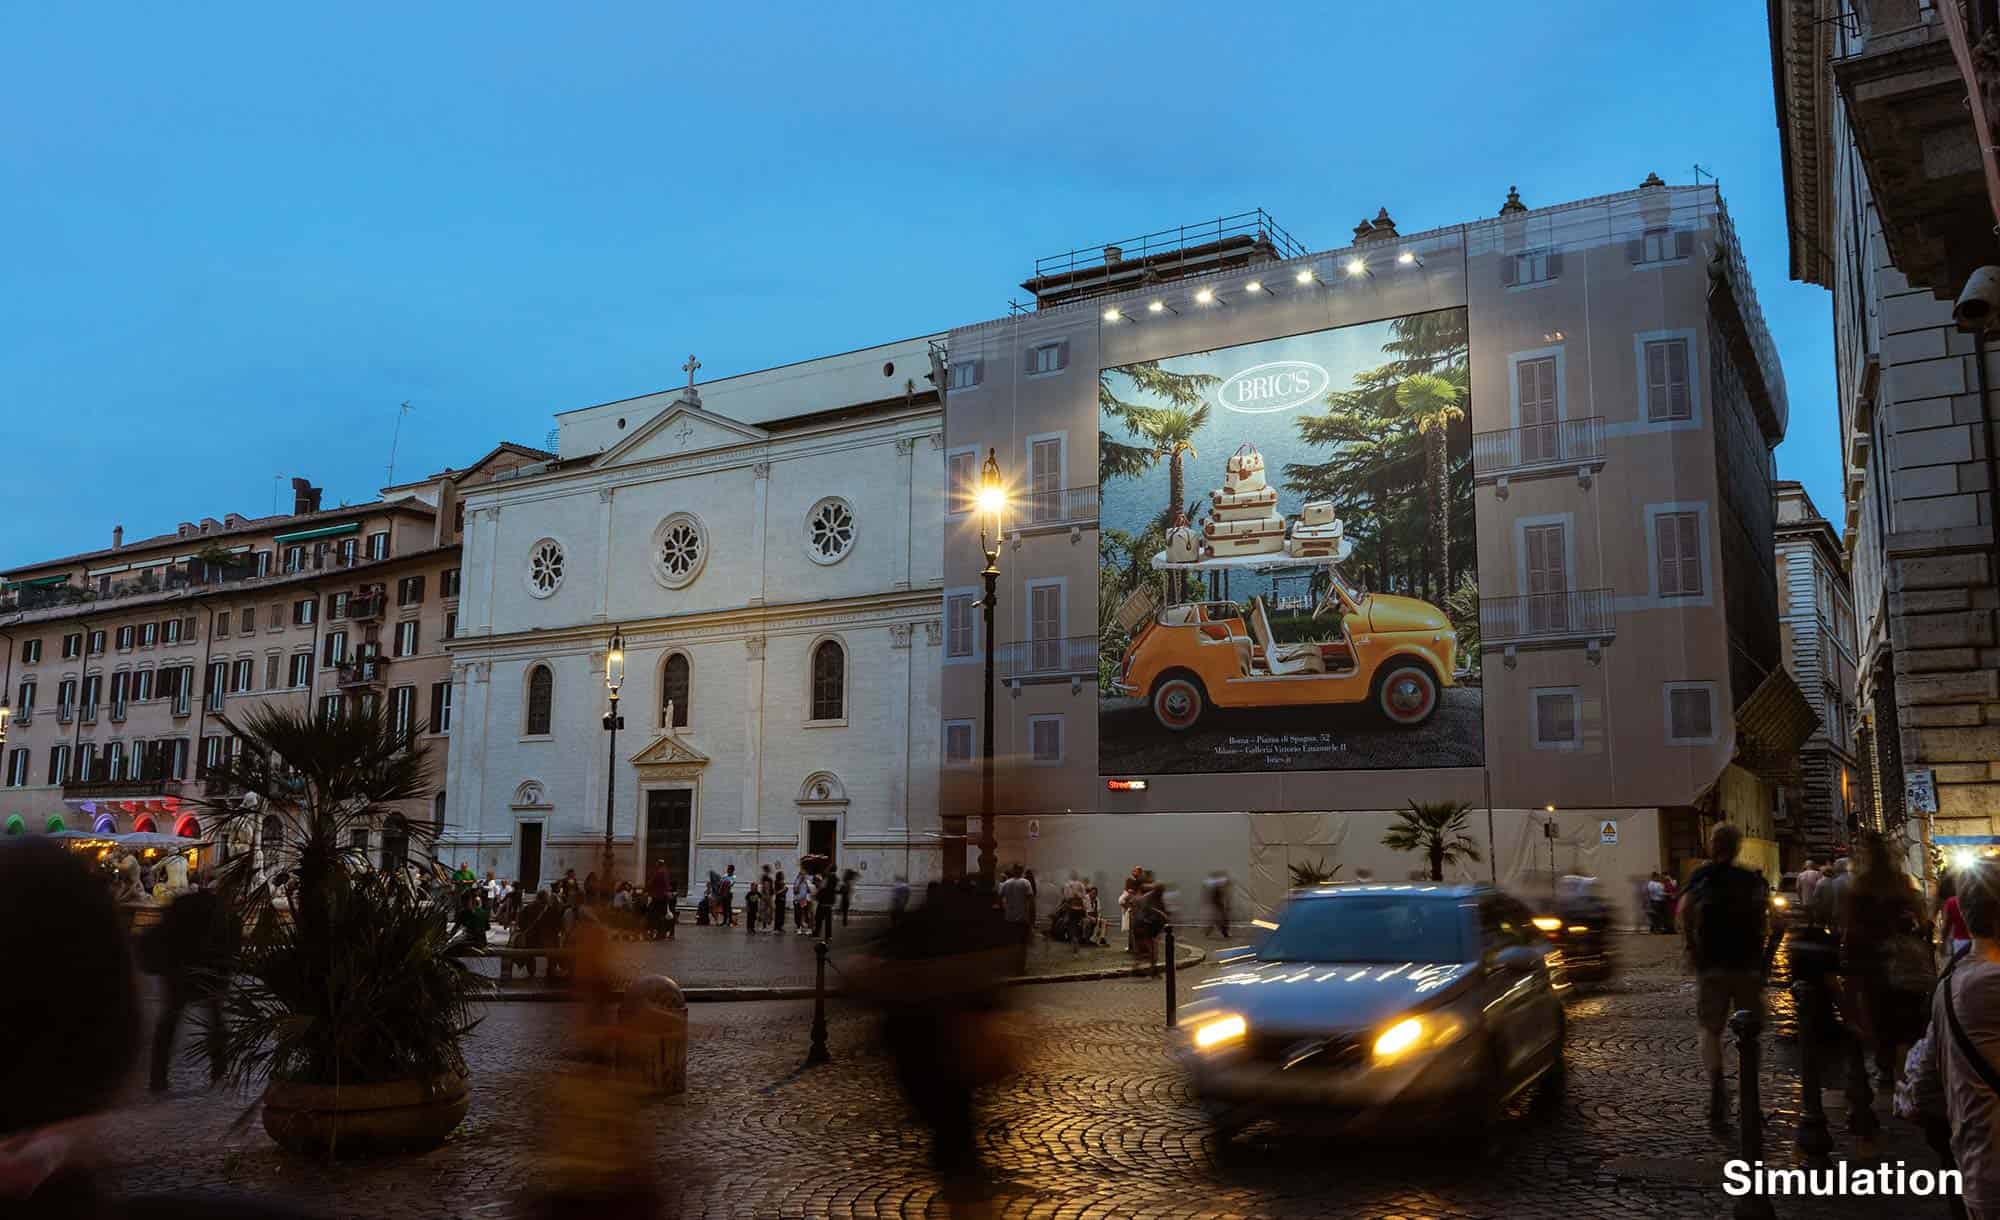 billboard in Piazza Noavona 106, Rome with Brics (fashion)